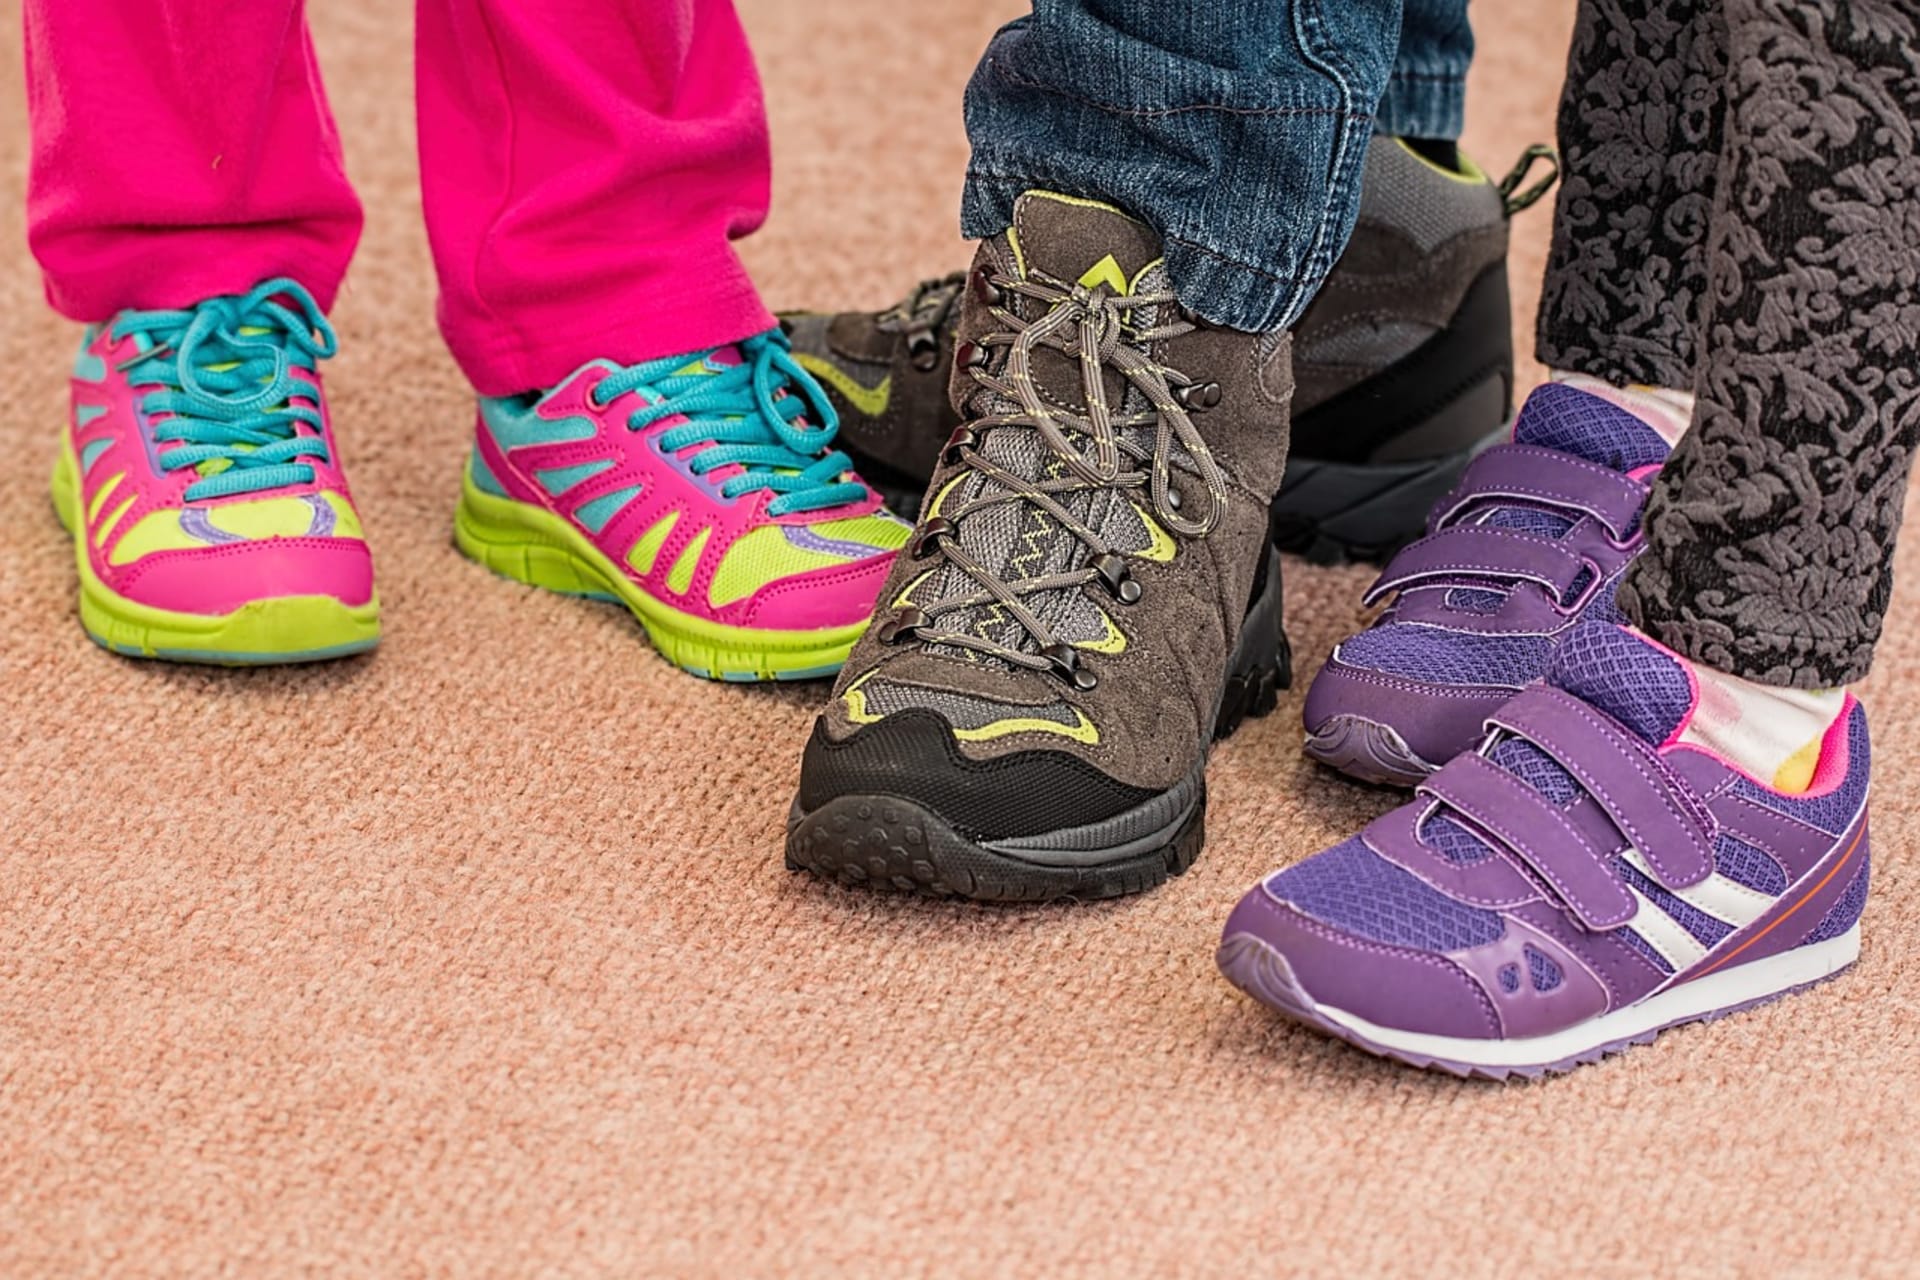 Vybrat pro své dítě vhodnou obuv je z hlediska zdraví velice důležité (ilustrační foto)